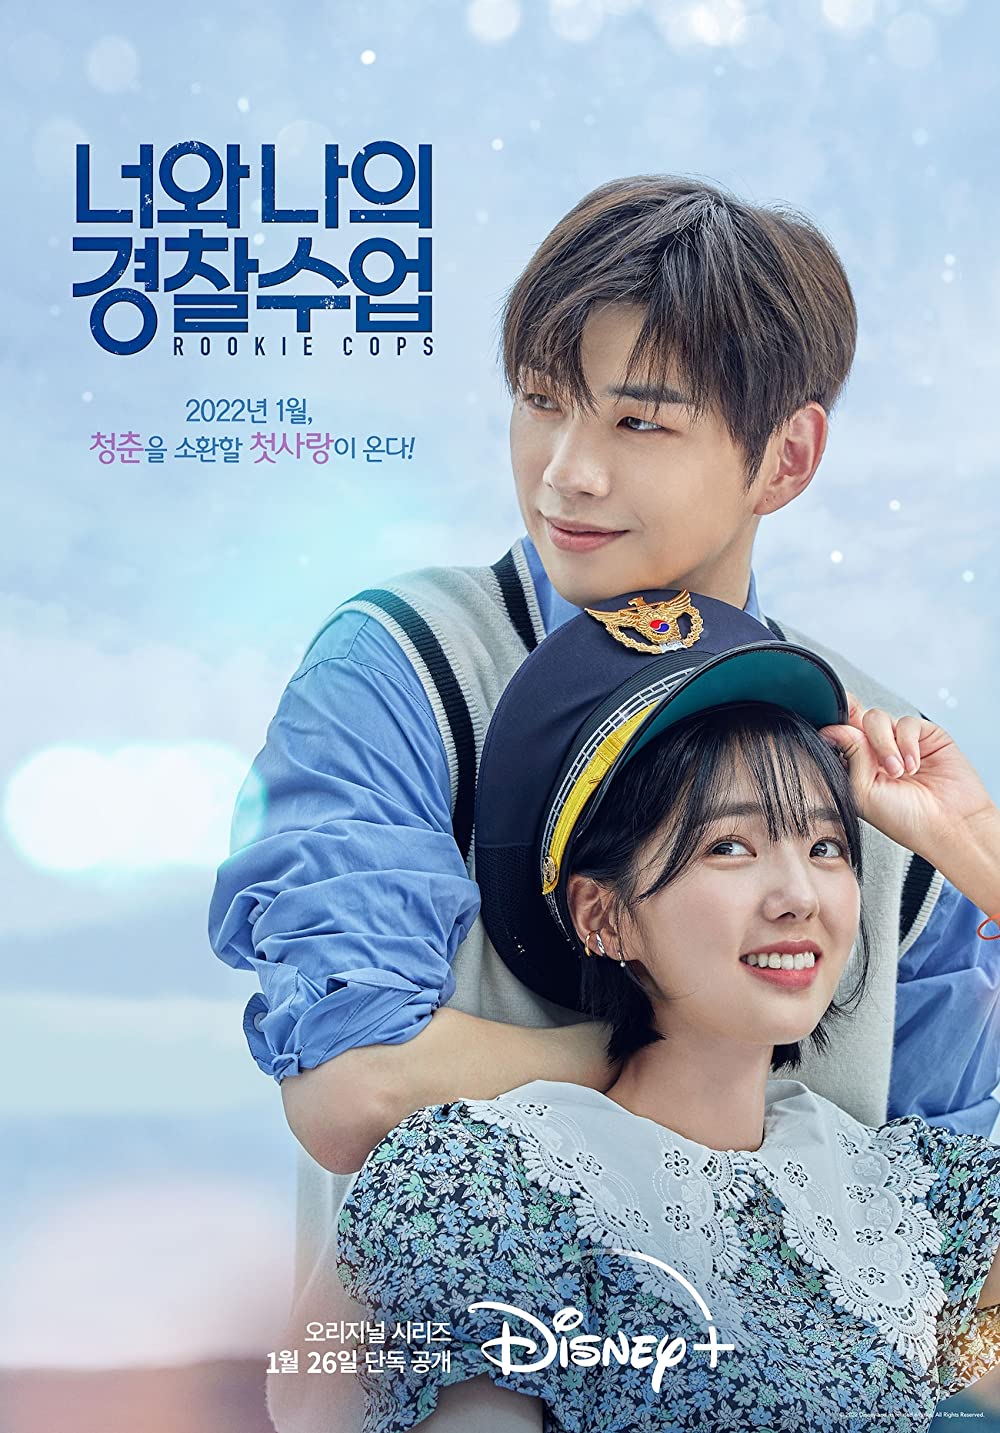 9 Drama Korea terlaris di Disney+ 2022, Snowdrop raih poin terbanyak